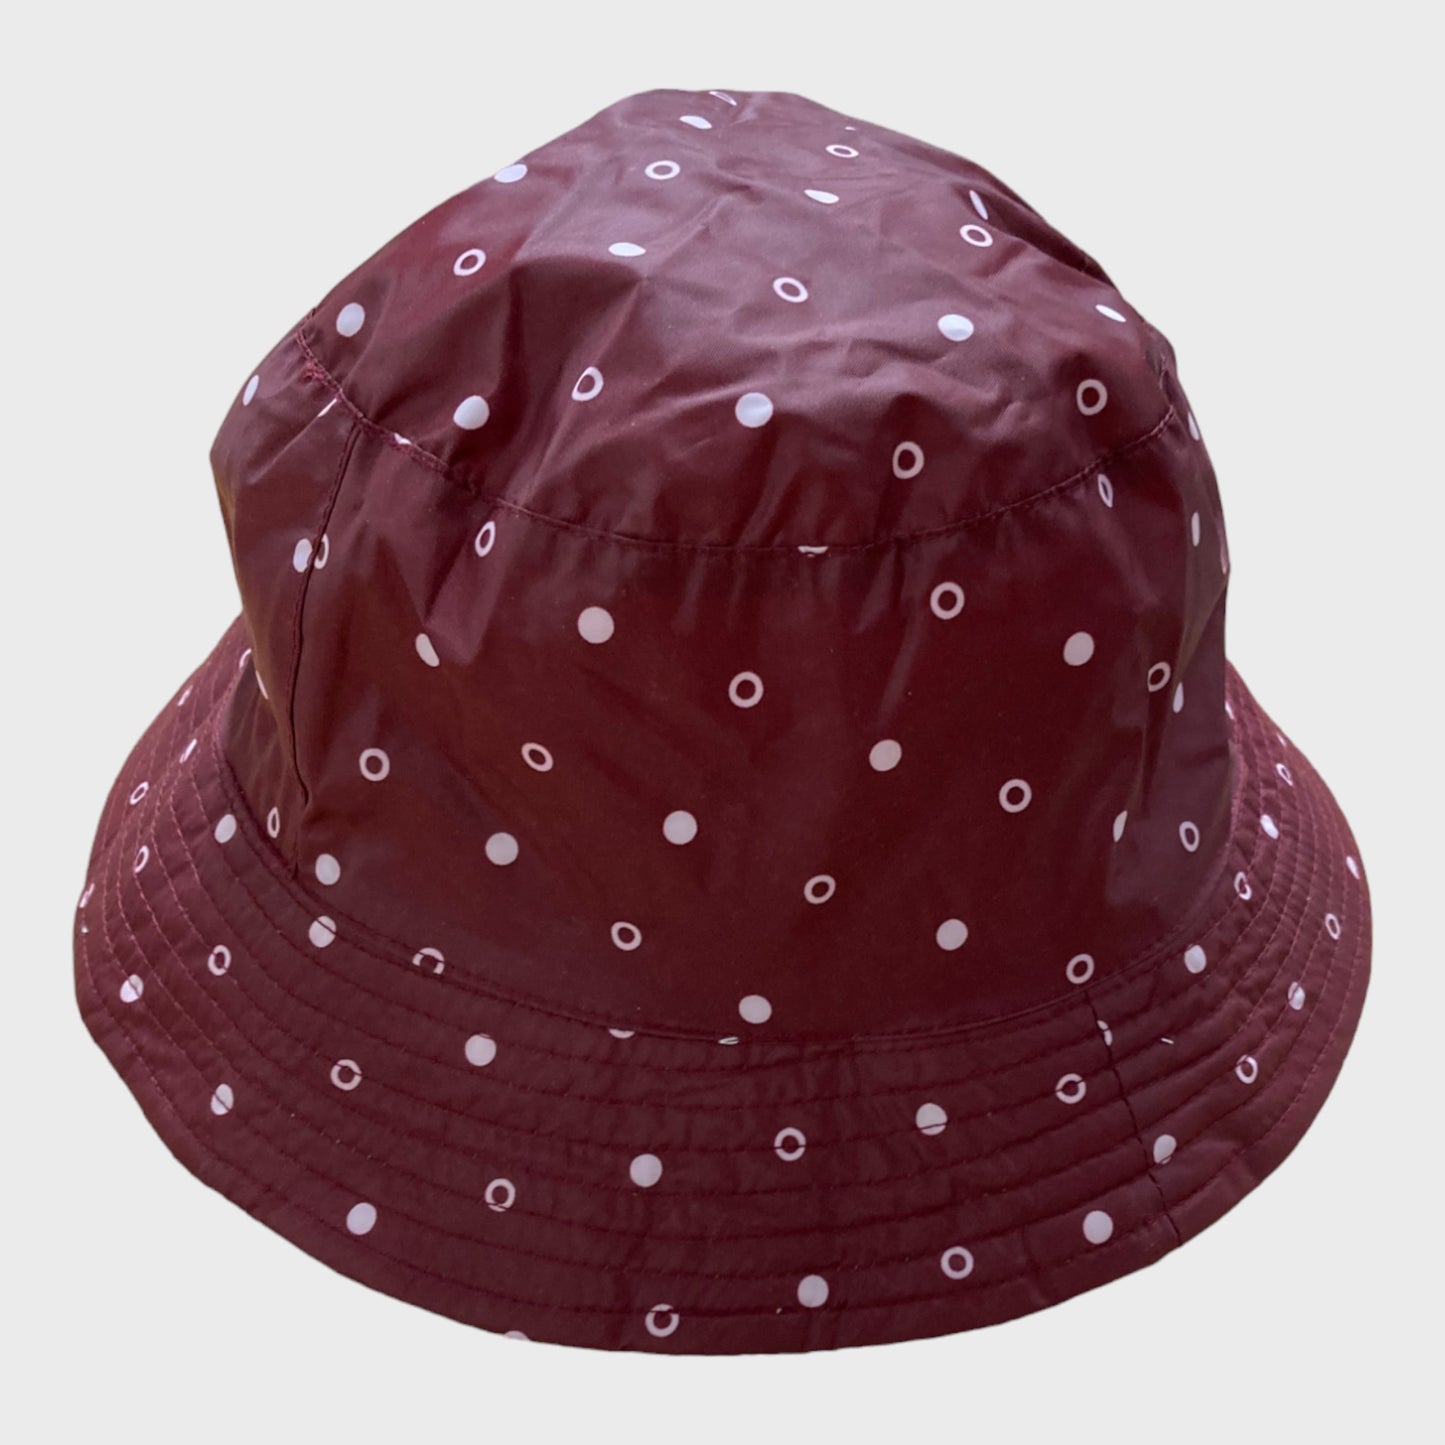 Showerproof Bucket Hat for Women